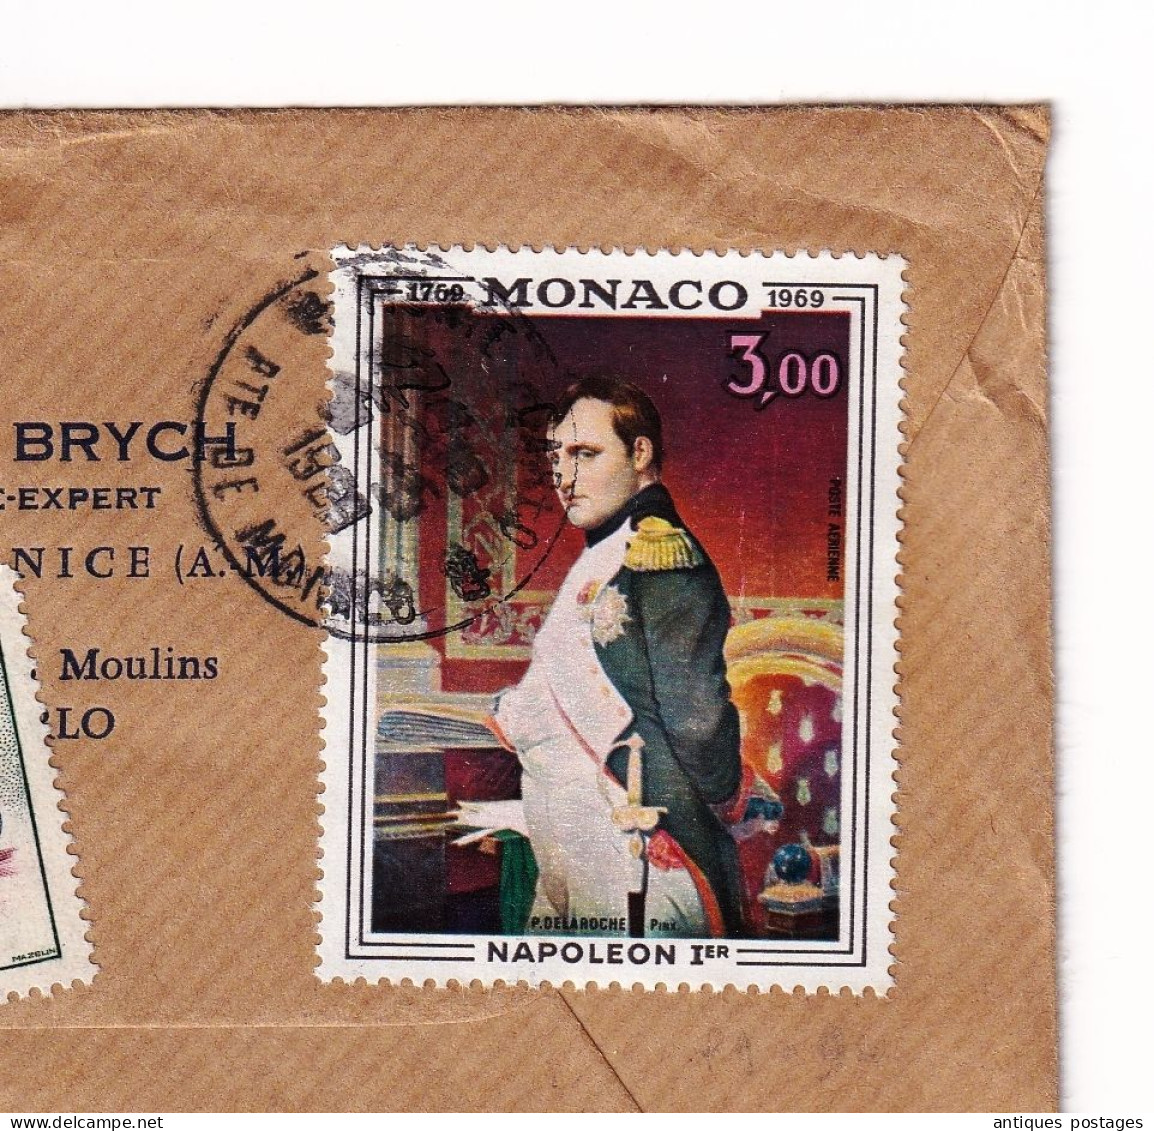 Lettre Recommandée 1959 Monaco François Brych Expert Empereur Napoléon Ier Bonaparte Paire Alfa Romeo 1950 - Briefe U. Dokumente